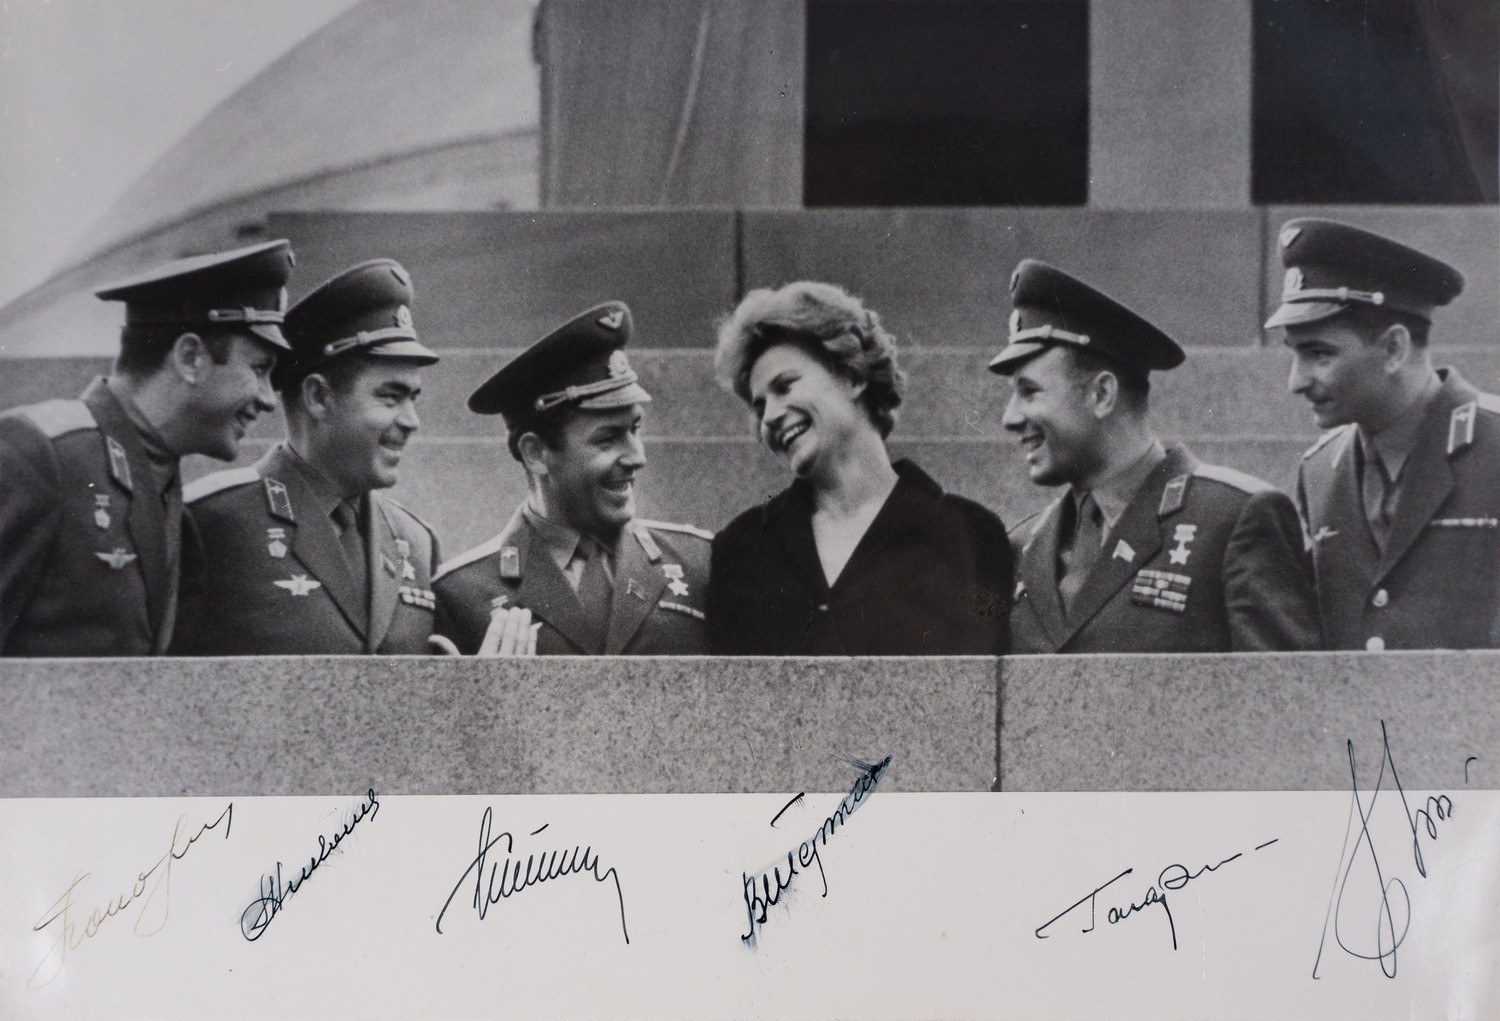 Фотография «Первые советские космонавты на трибуне Мавзолея Ленина 22 июня 1963 года». Автографы шестерых первых советских космонавтов.